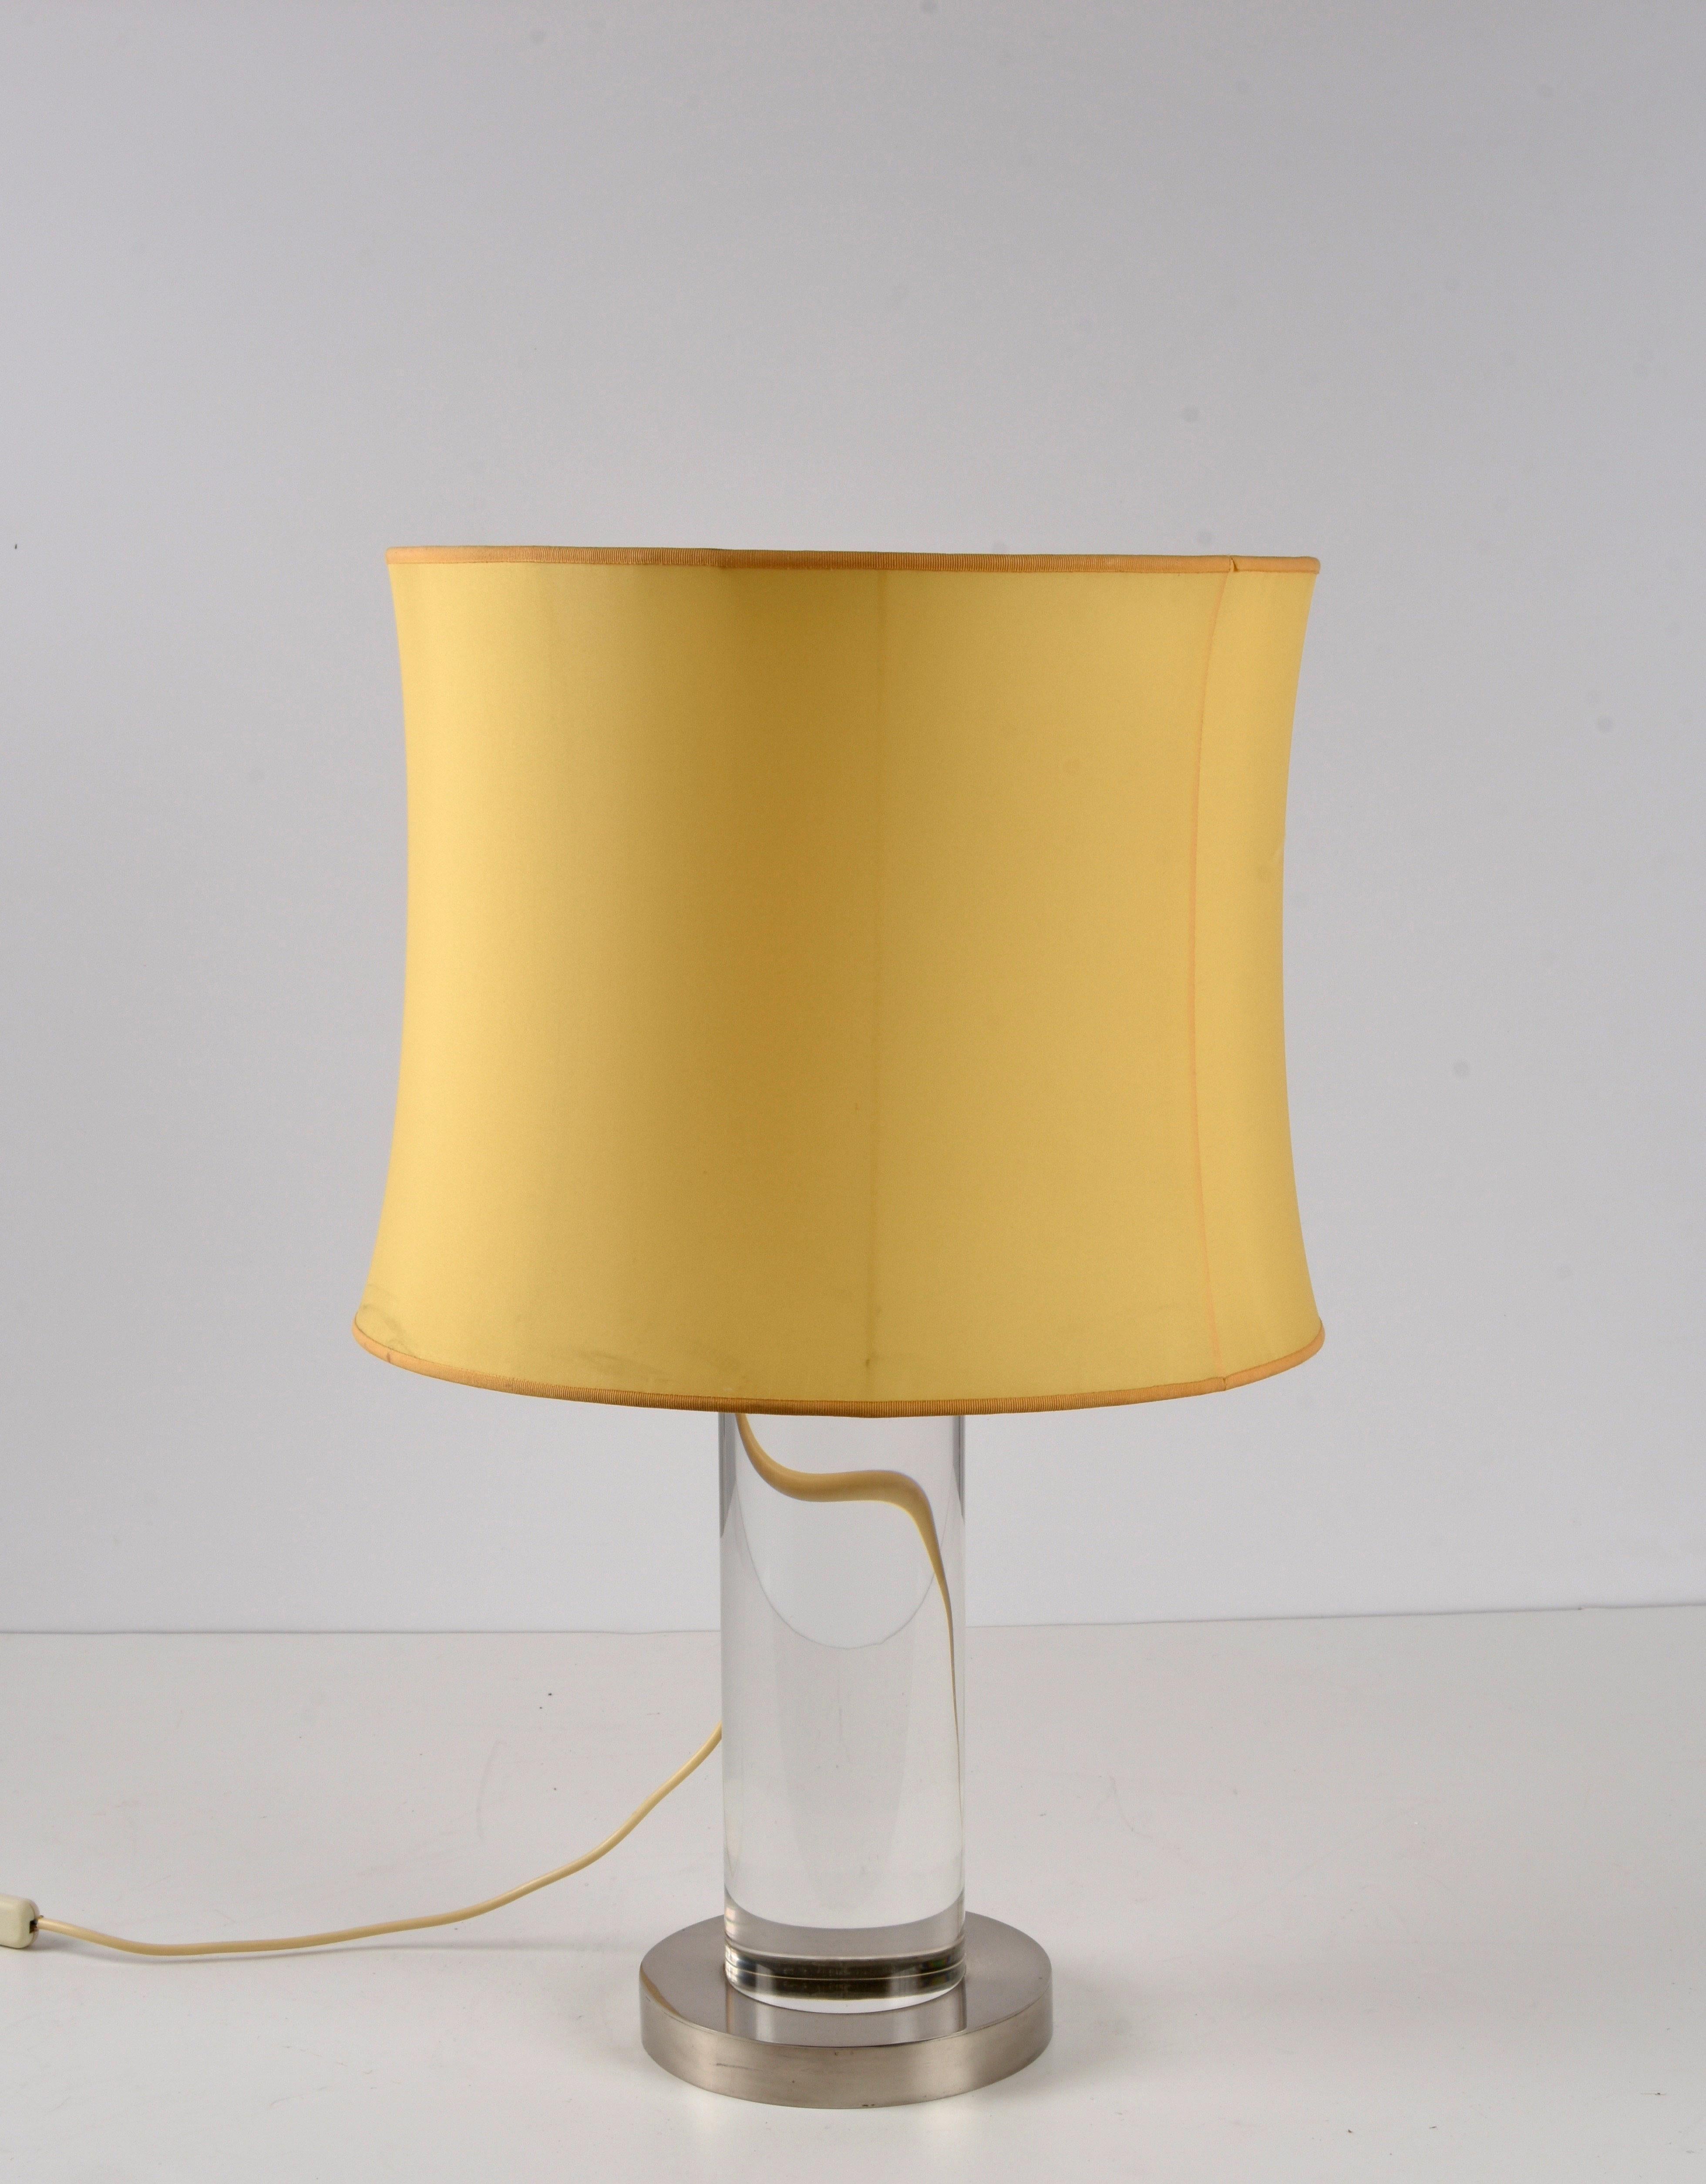 Erstaunliche Tischlampe aus Lucite und Messing aus der Mitte des Jahrhunderts. Dieses fantastische Stück wurde in den 1970er Jahren von Romeo Rega in Italien entworfen.

Die phantasievolle zylindrische Struktur dieser Lampe mit einer Säule aus